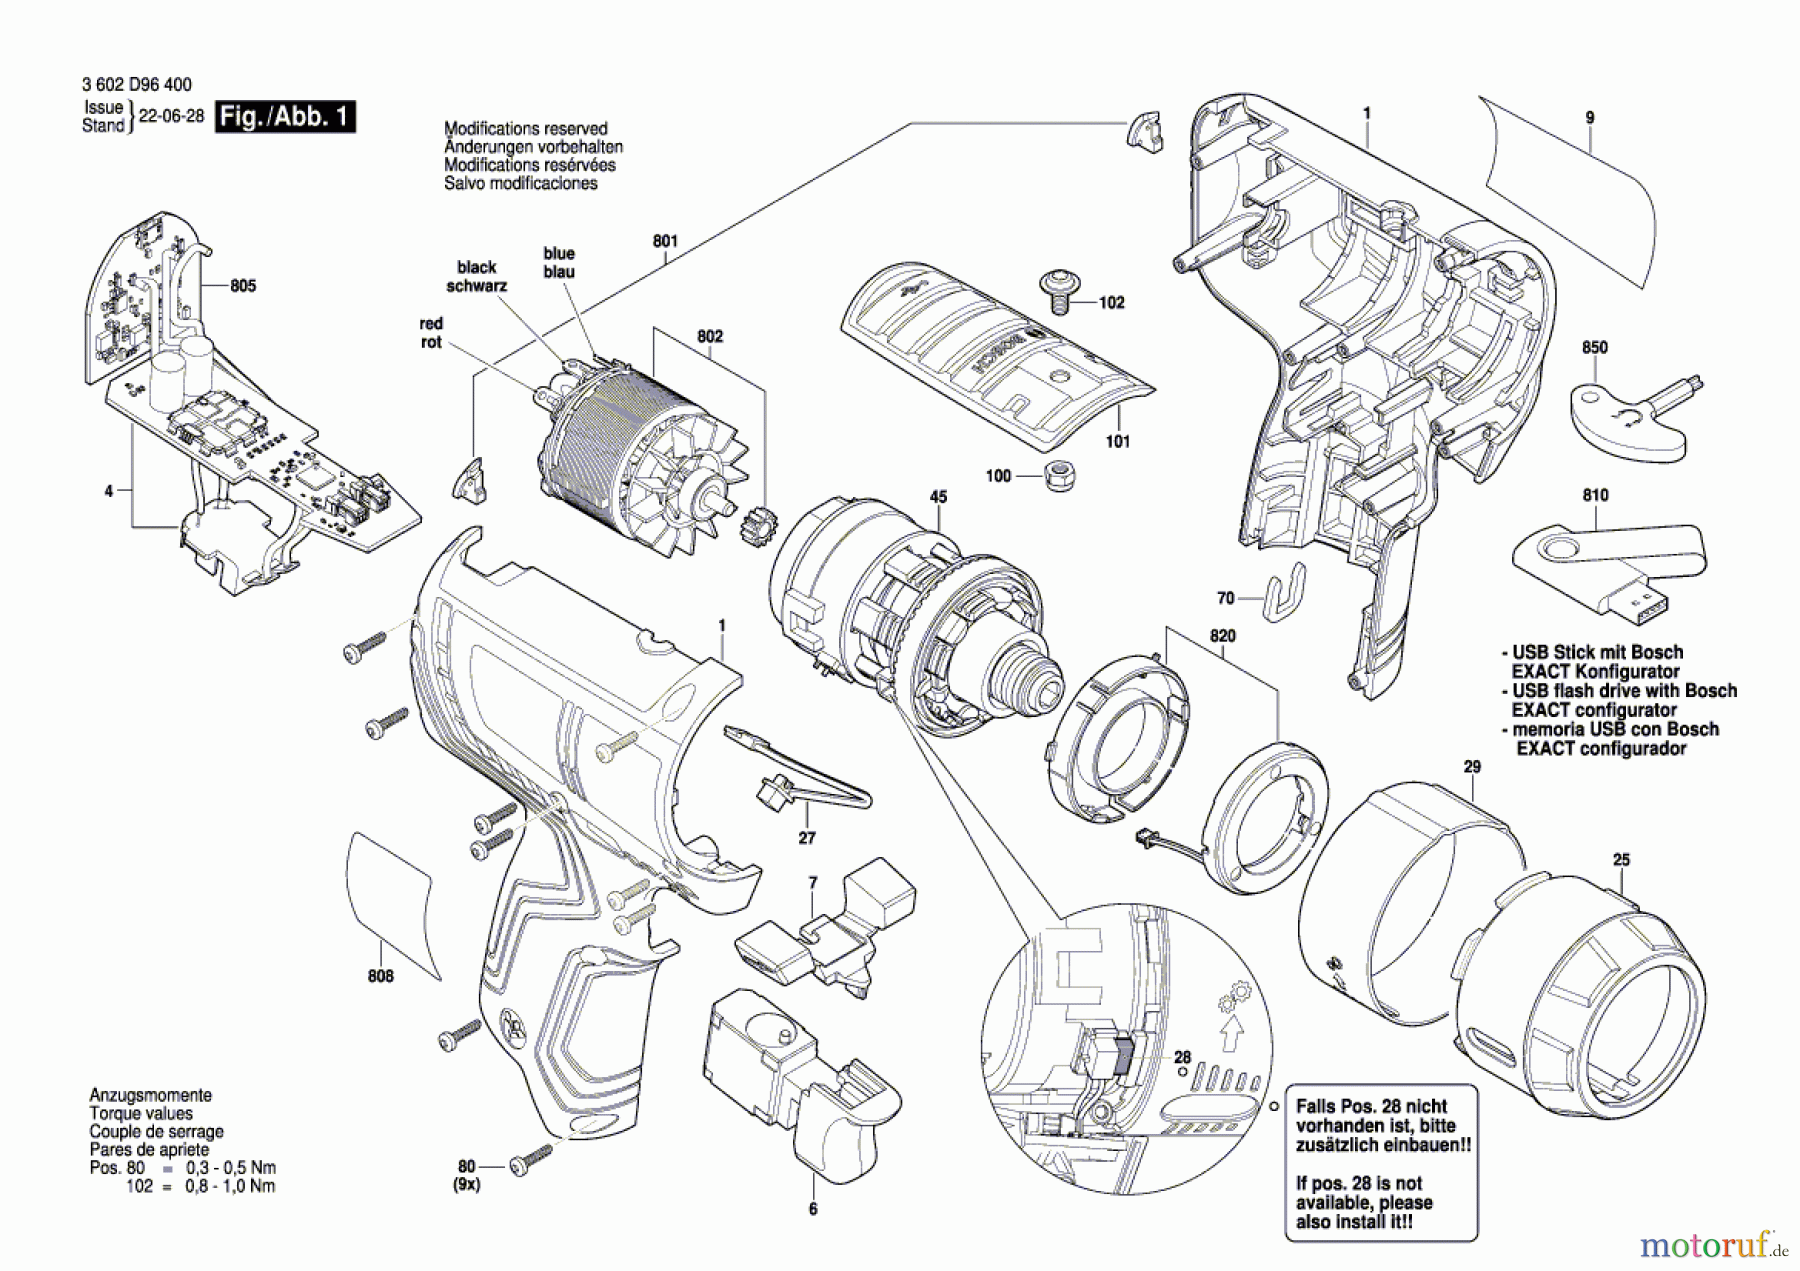  Bosch Akku Werkzeug Iw-Akku-Schrauber EXACT 12V-3-1100 Seite 1